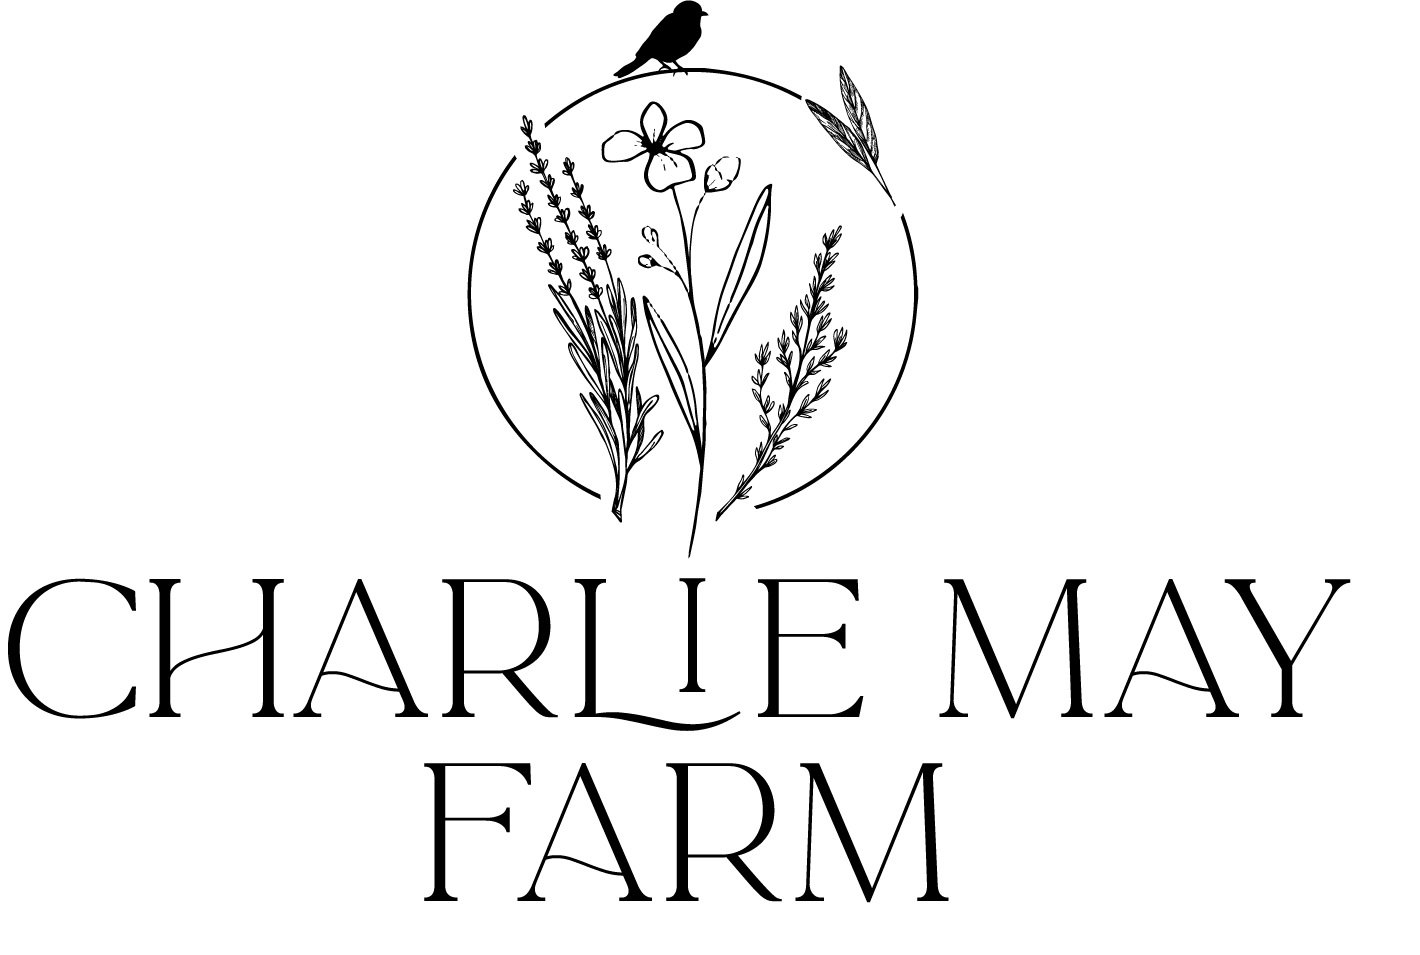 Charlie May Farm